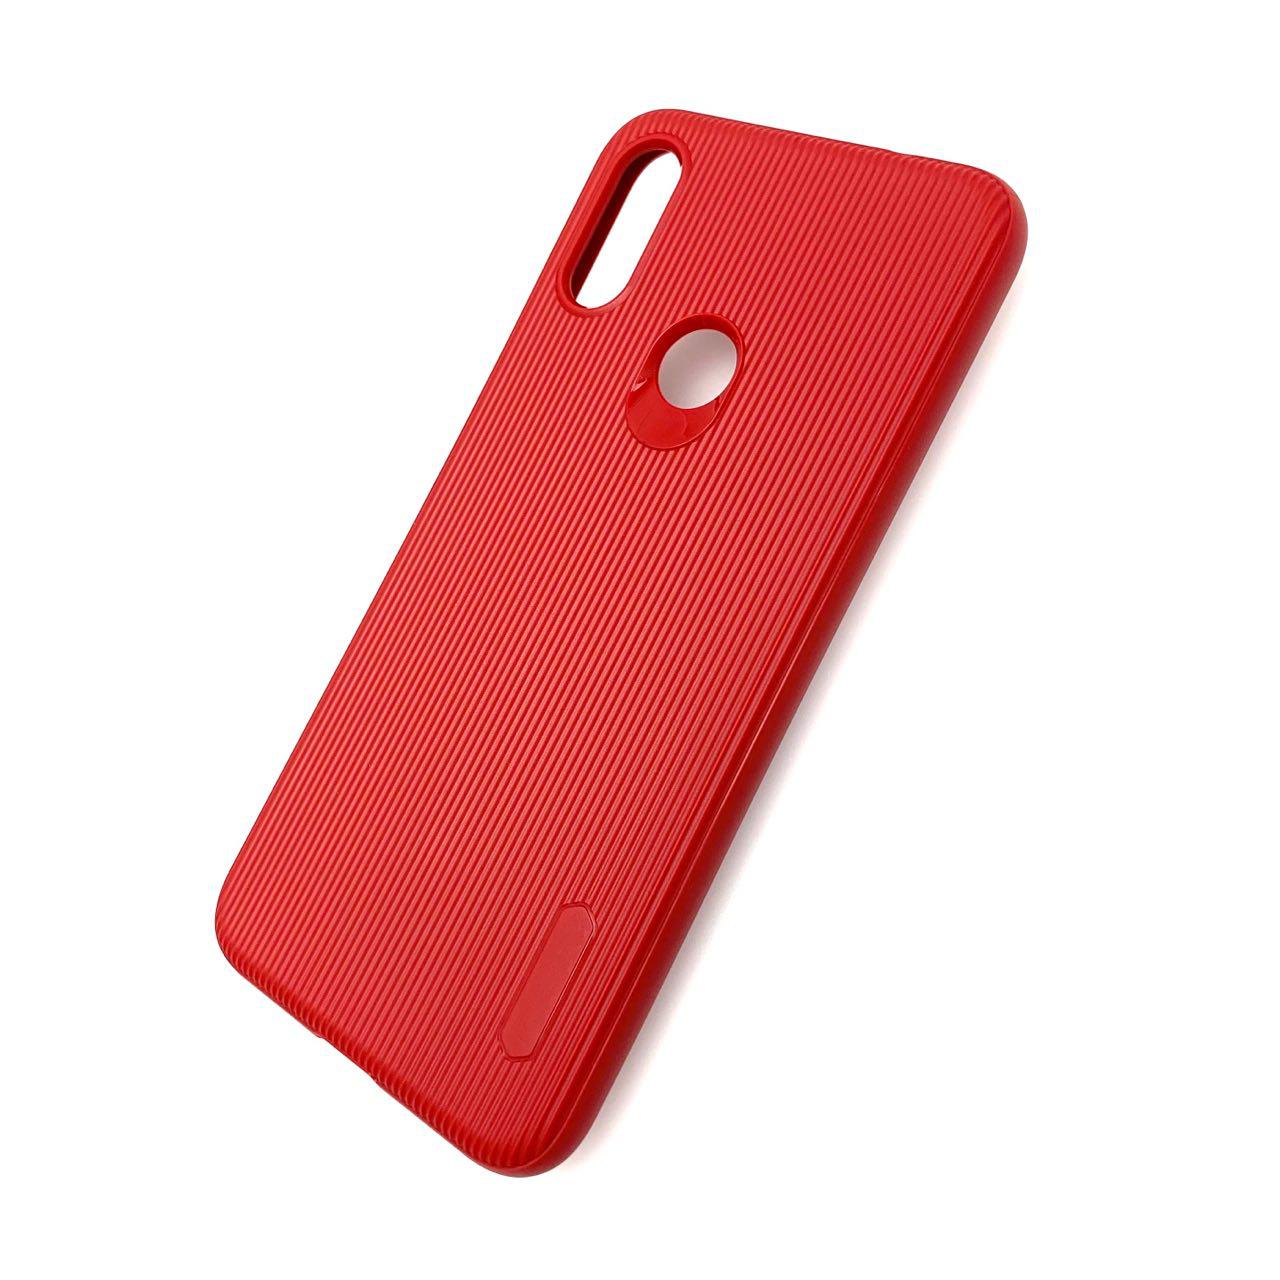 Чехол накладка Cherry для XIAOMI Redmi Note 7, Note 7 Pro, силикон, полоски, цвет темно красный.